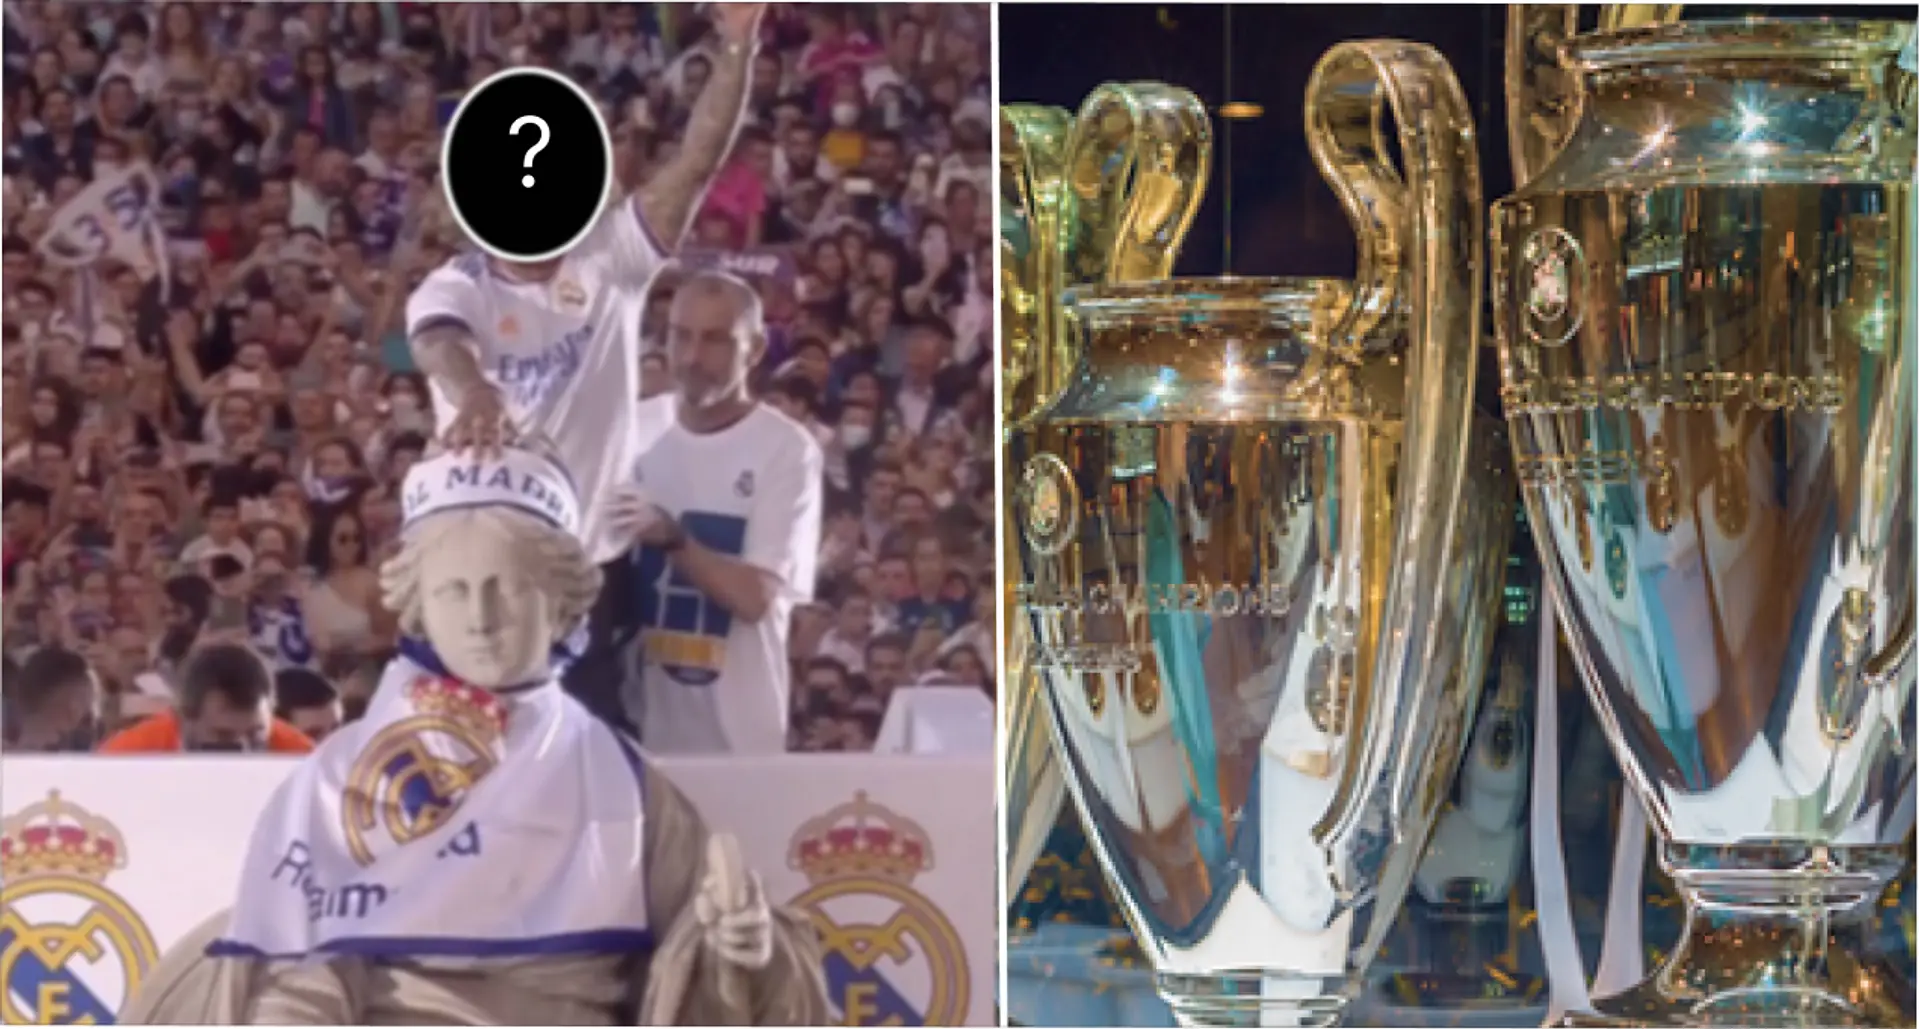 ¿Quién es el jugador más condecorado del Real Madrid? Contestado